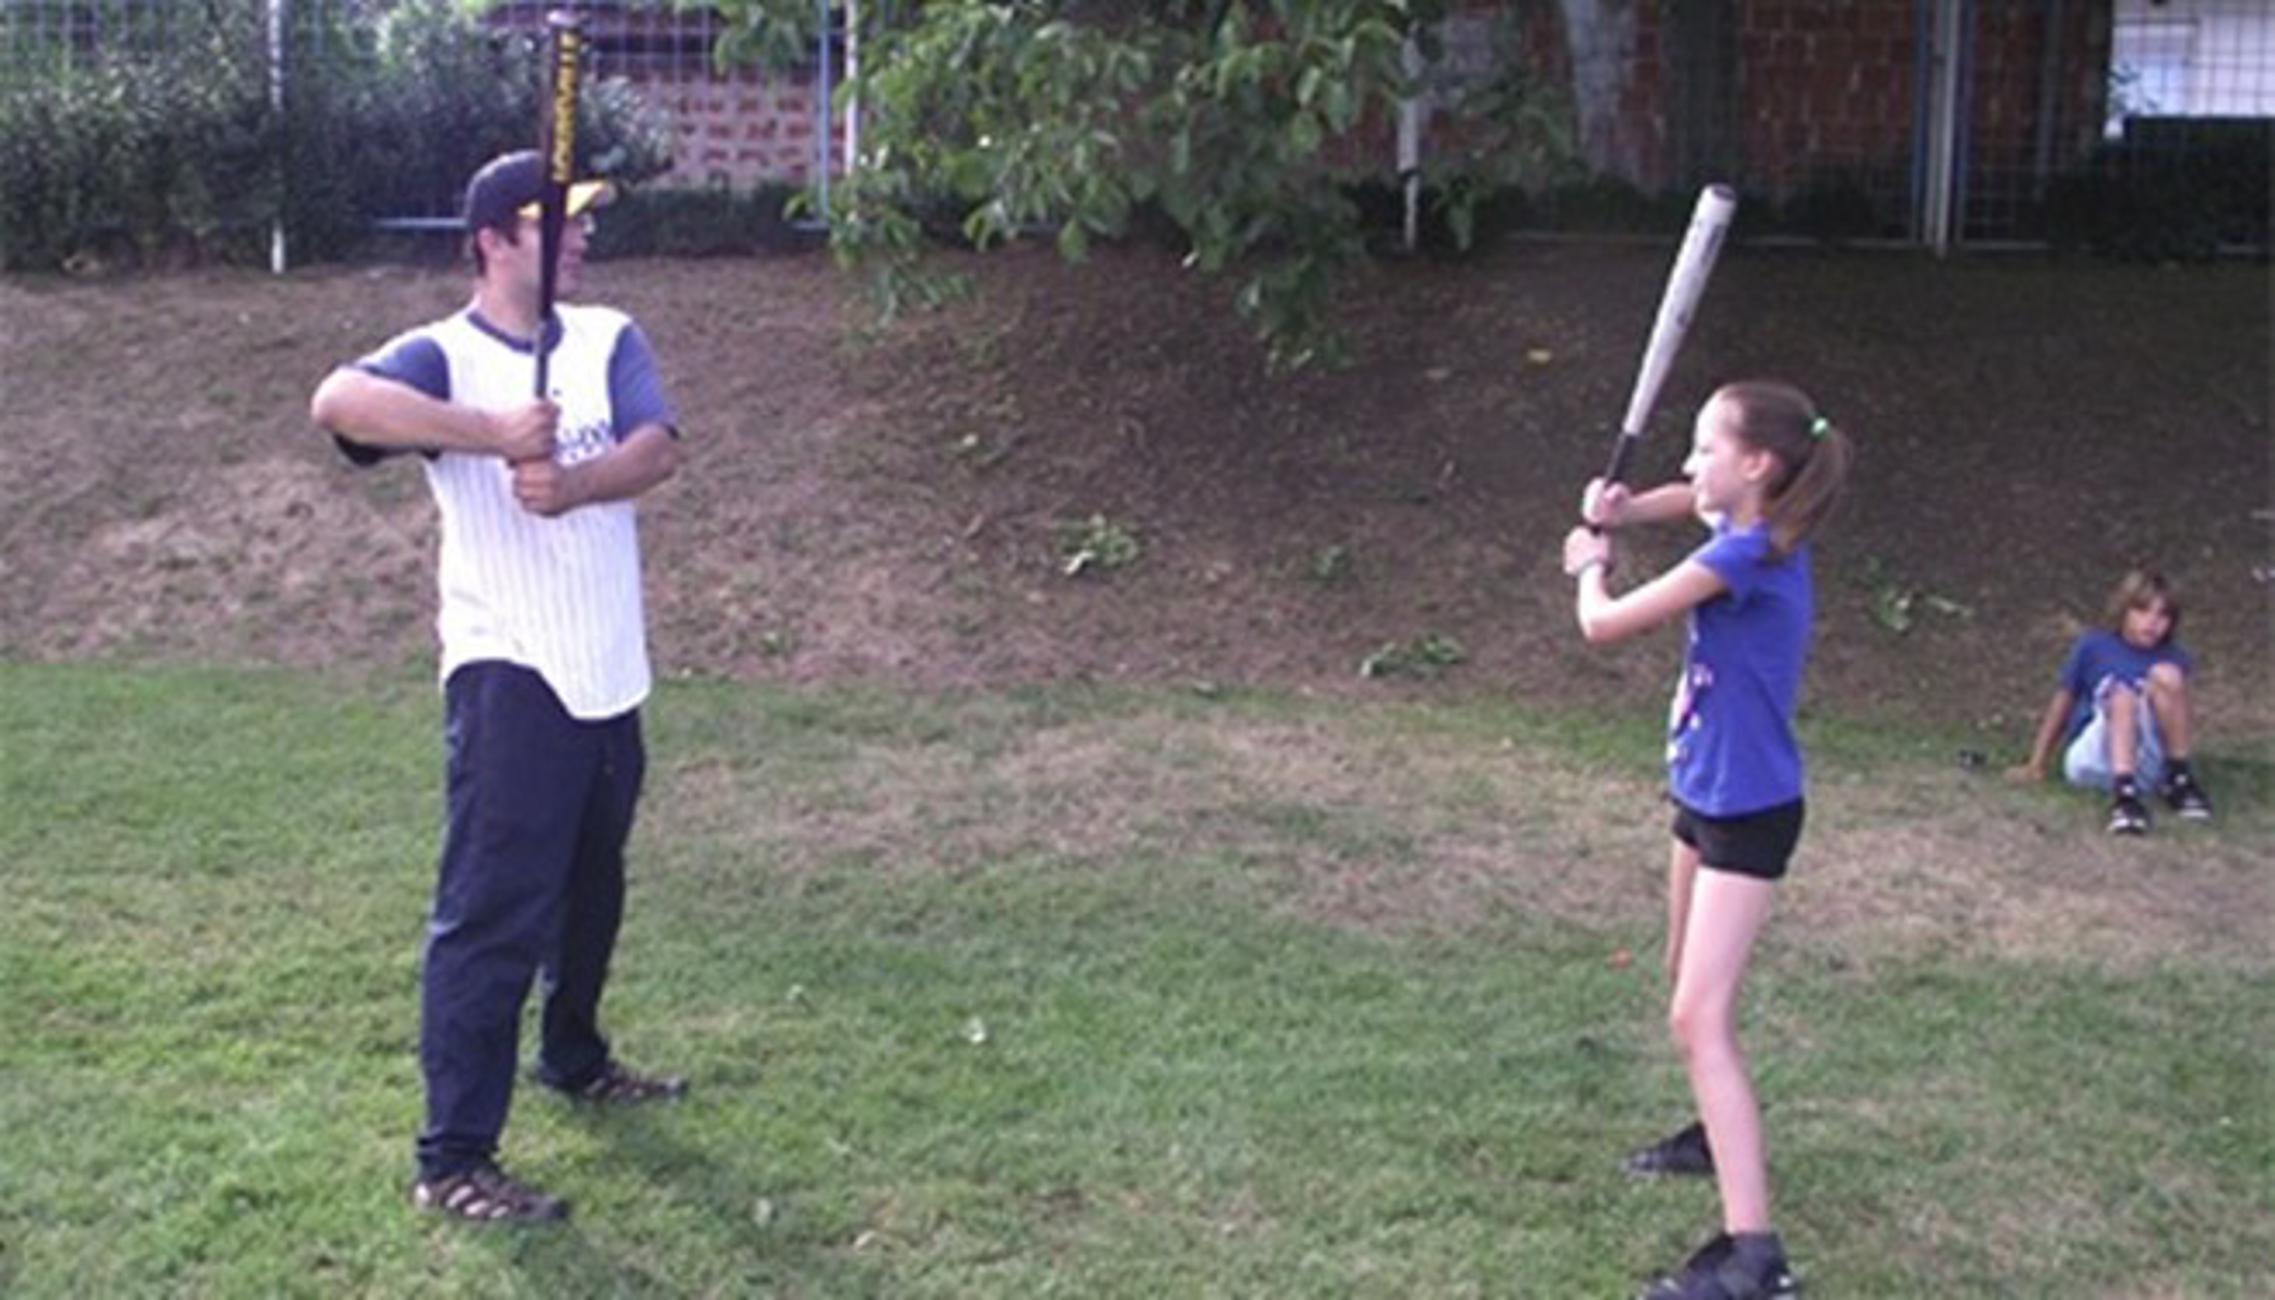  Baptistička crkva Nova Gradiška organizirala je Baseball kamp za djecu 